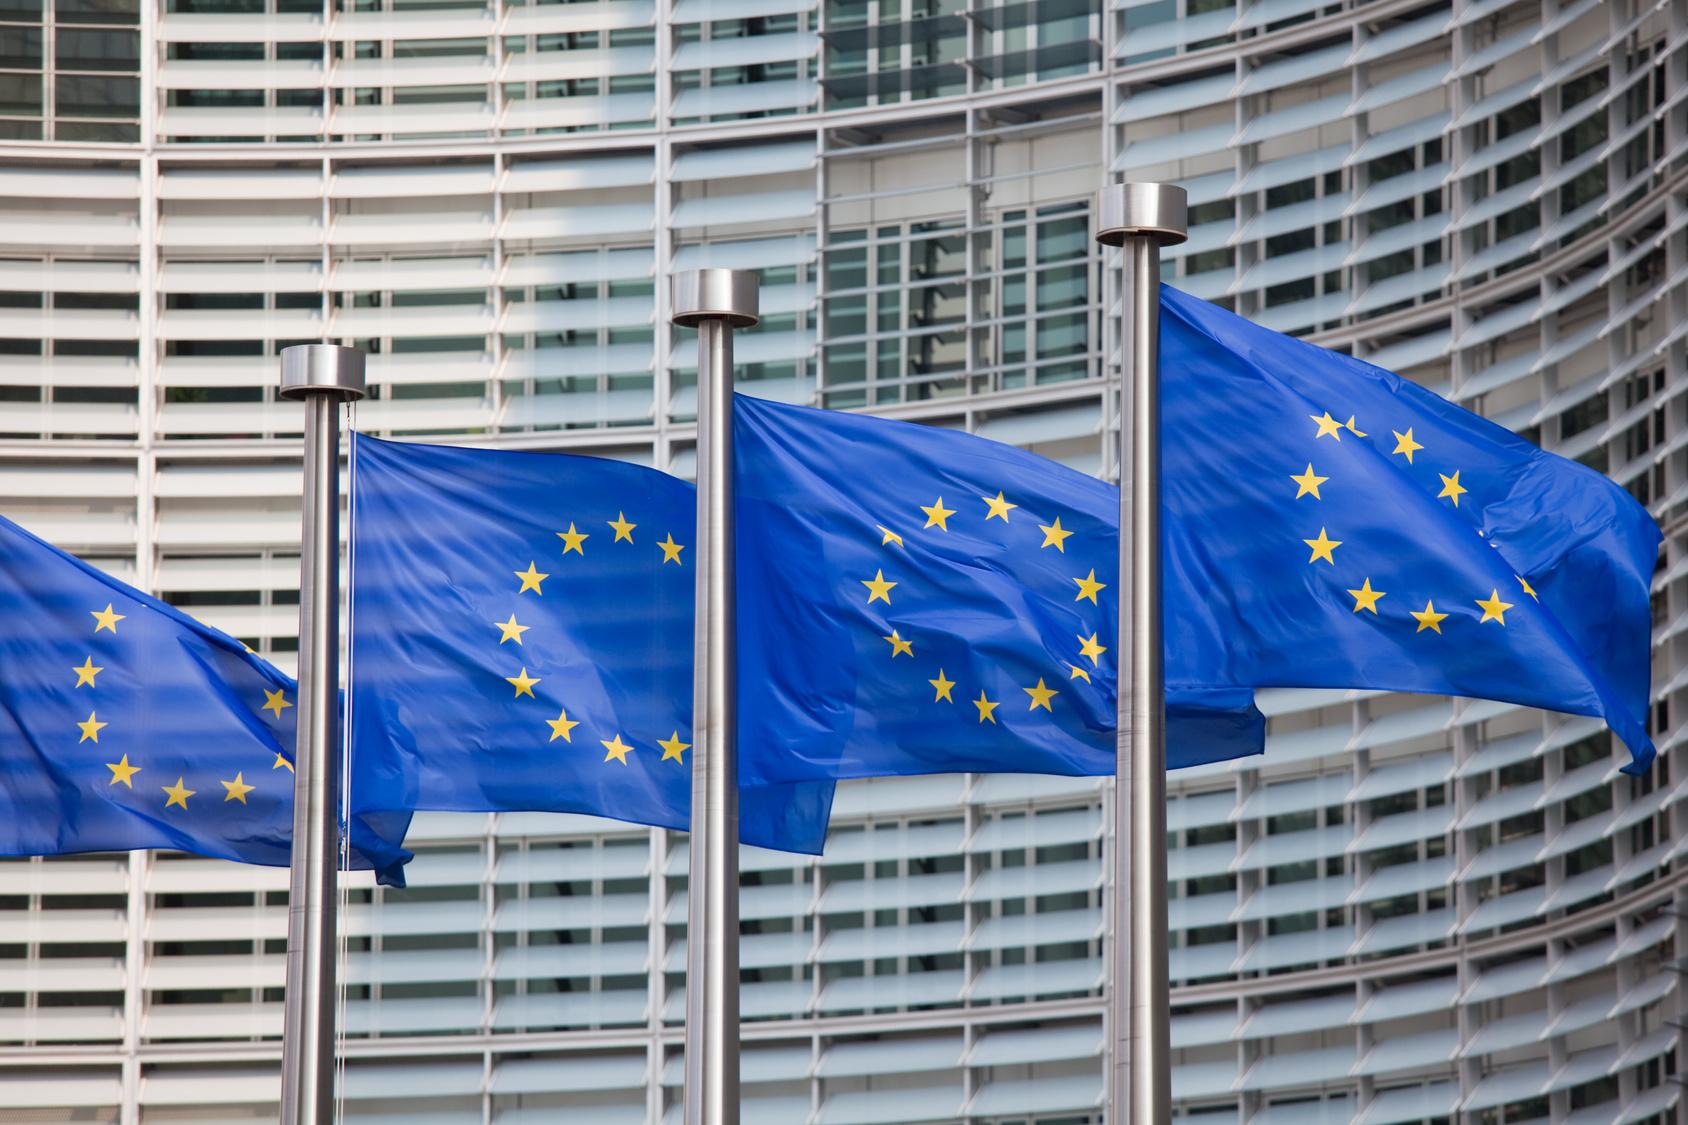 Banderas de la Unión Europea que ha aprobado el Nuevo Reglamento Europeo de Protección de Datos